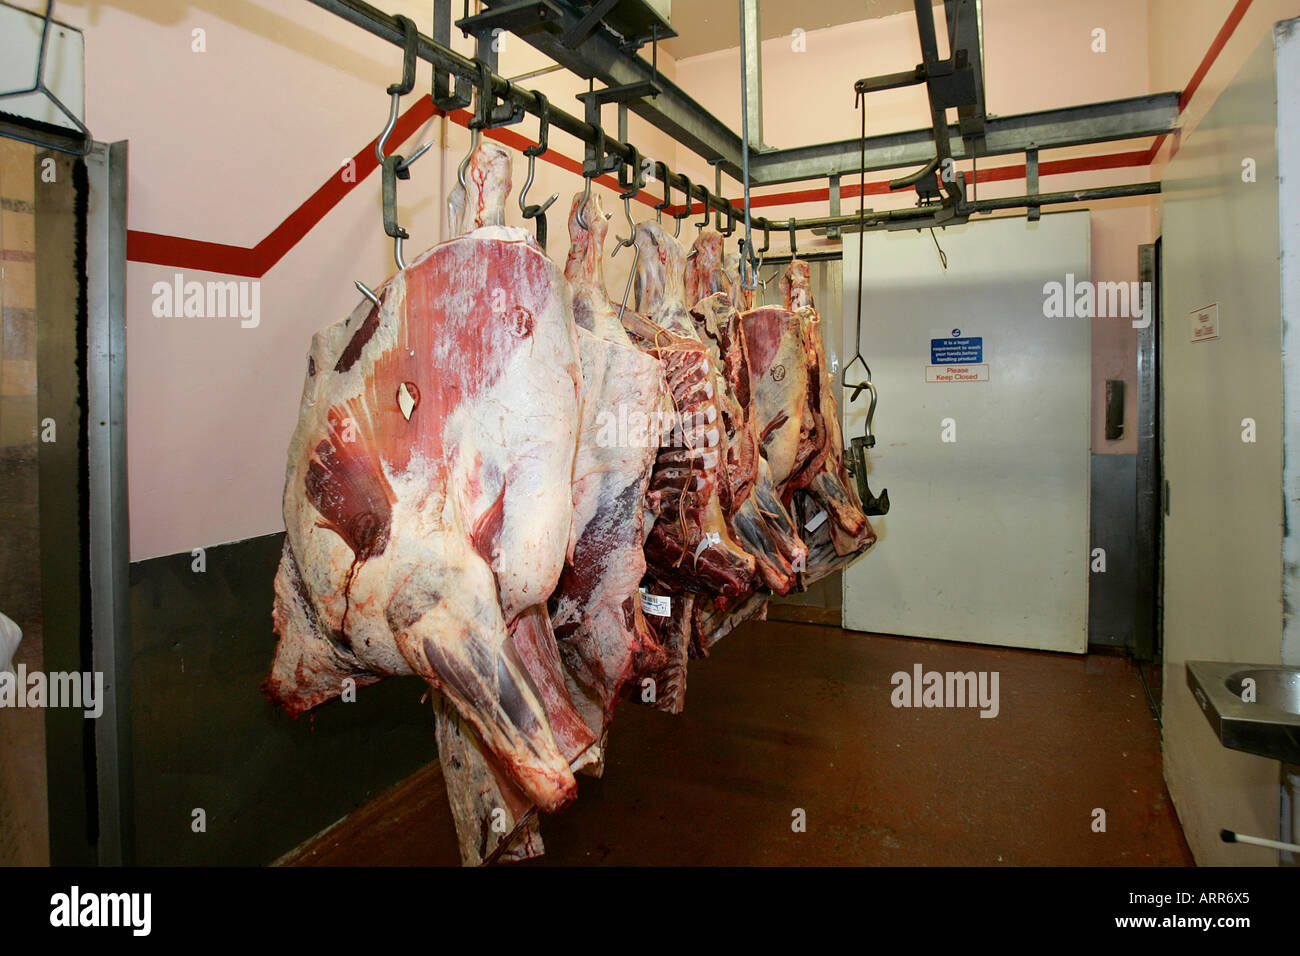 Macello di carcasse di carne morta pig agricoltura bestiame chiller pancetta carni bovine i lati macello carcassa cibo agricola Agriturismo Foto Stock